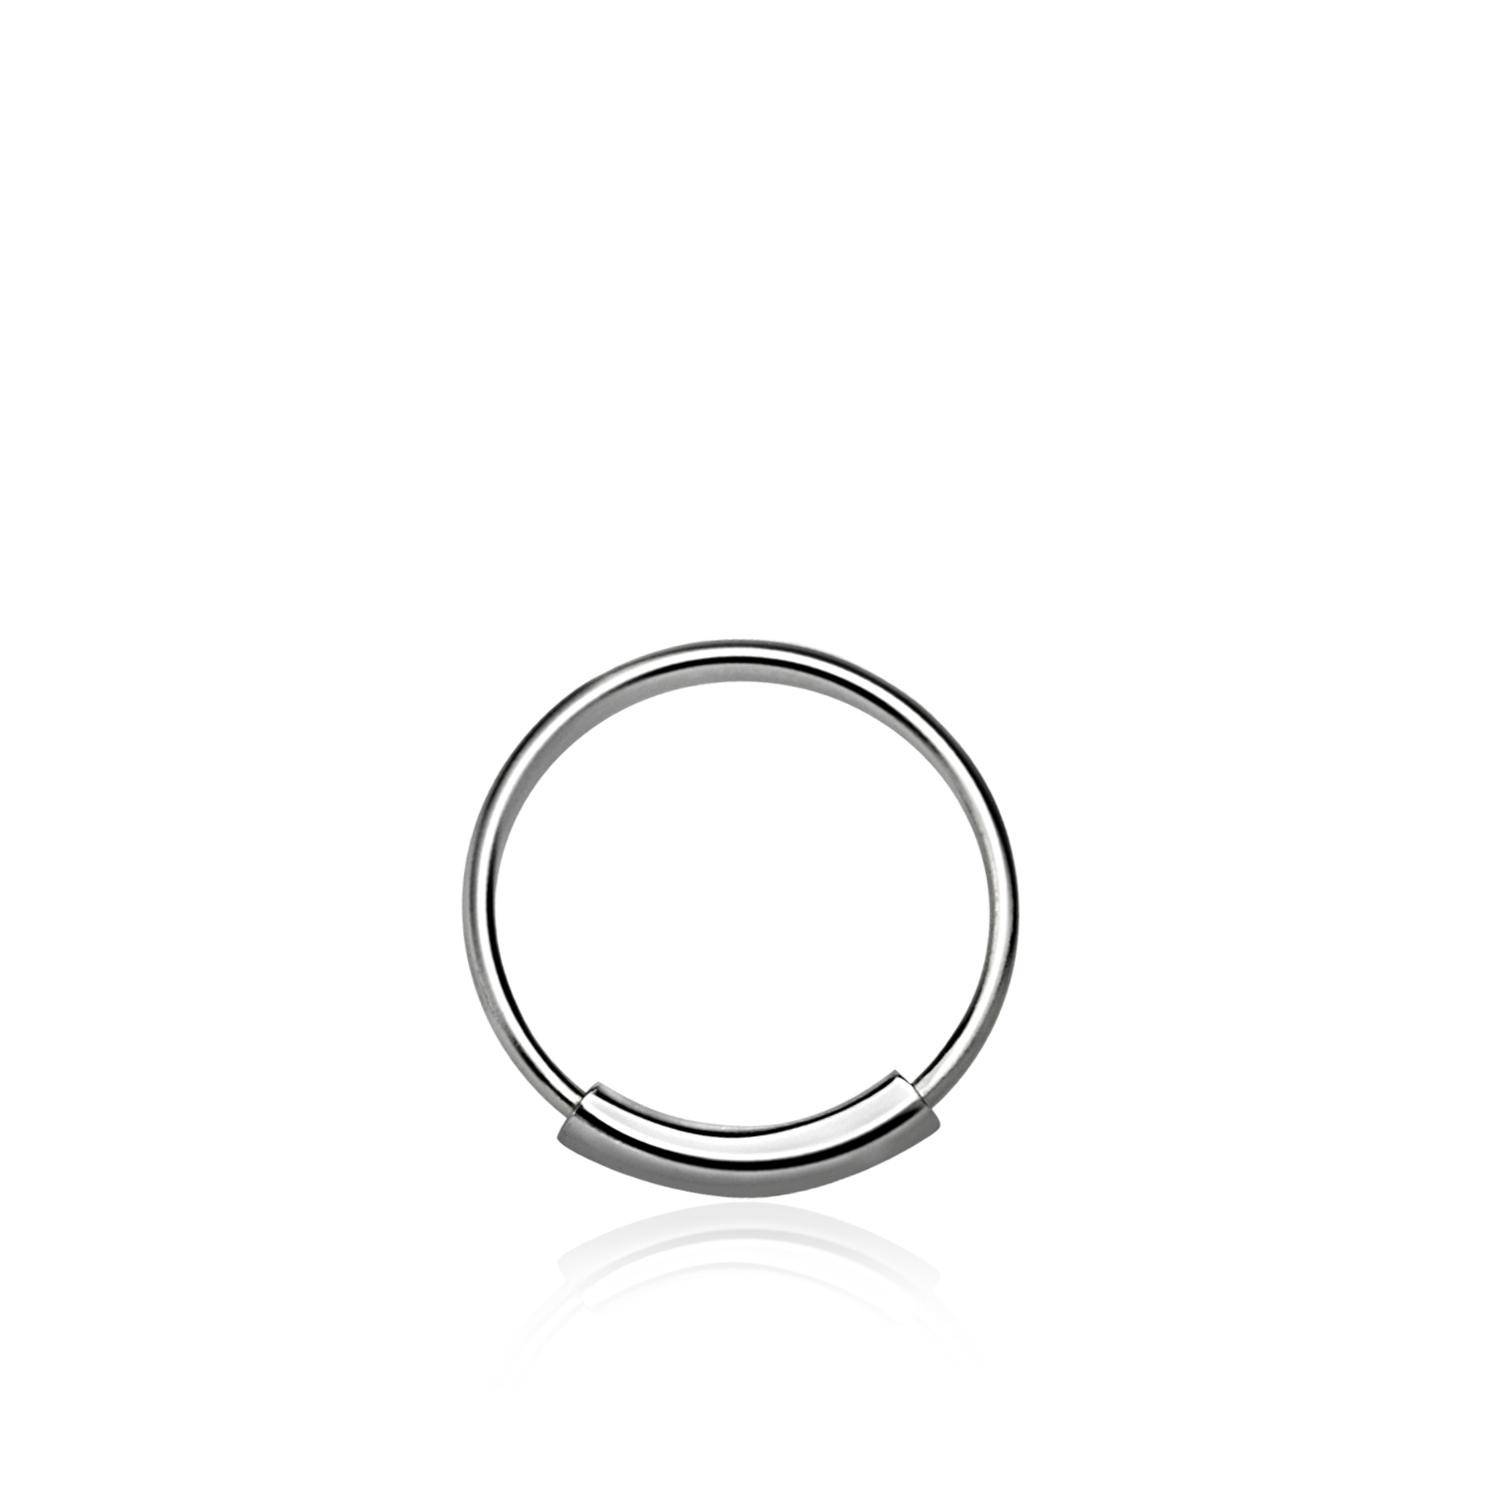 Näsring / sömlös ring i 925 silver 8mm